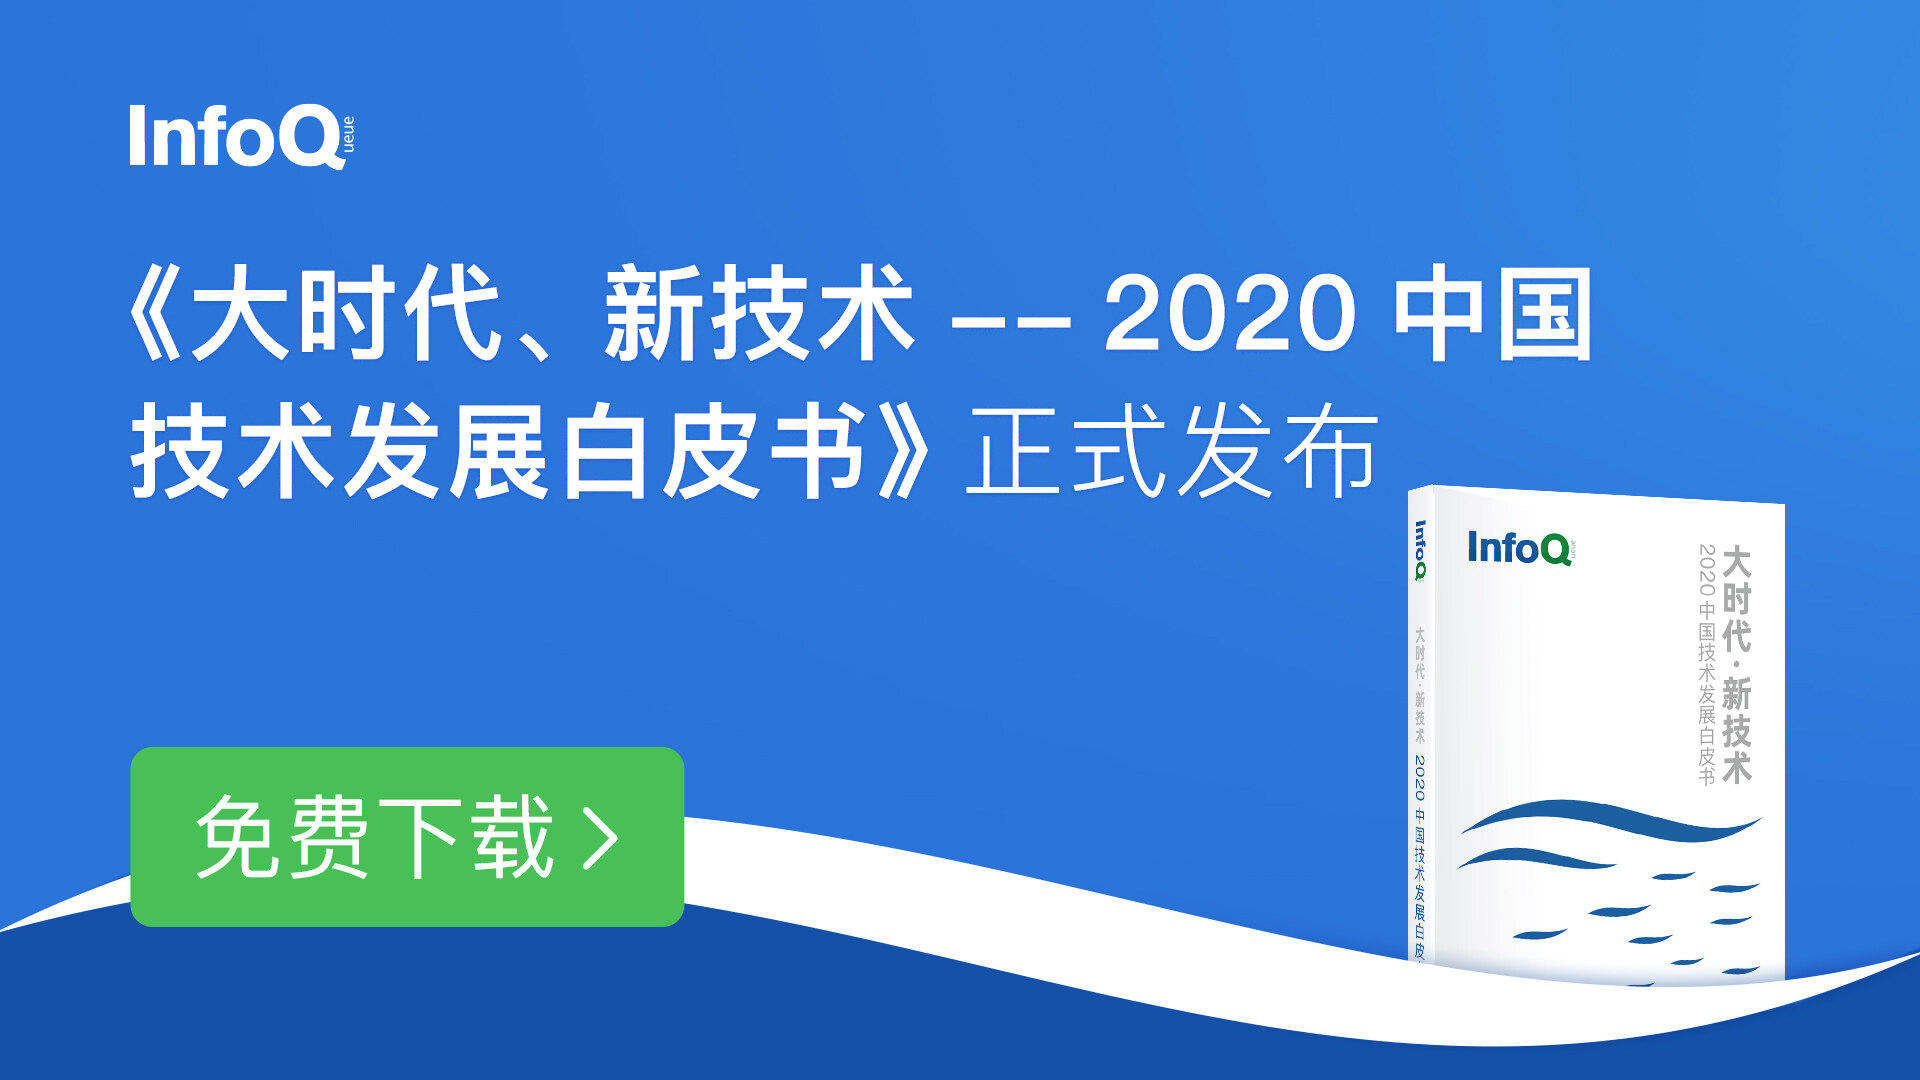 送给技术人的礼物，InfoQ《2020中国技术发展白皮书》重磅发布